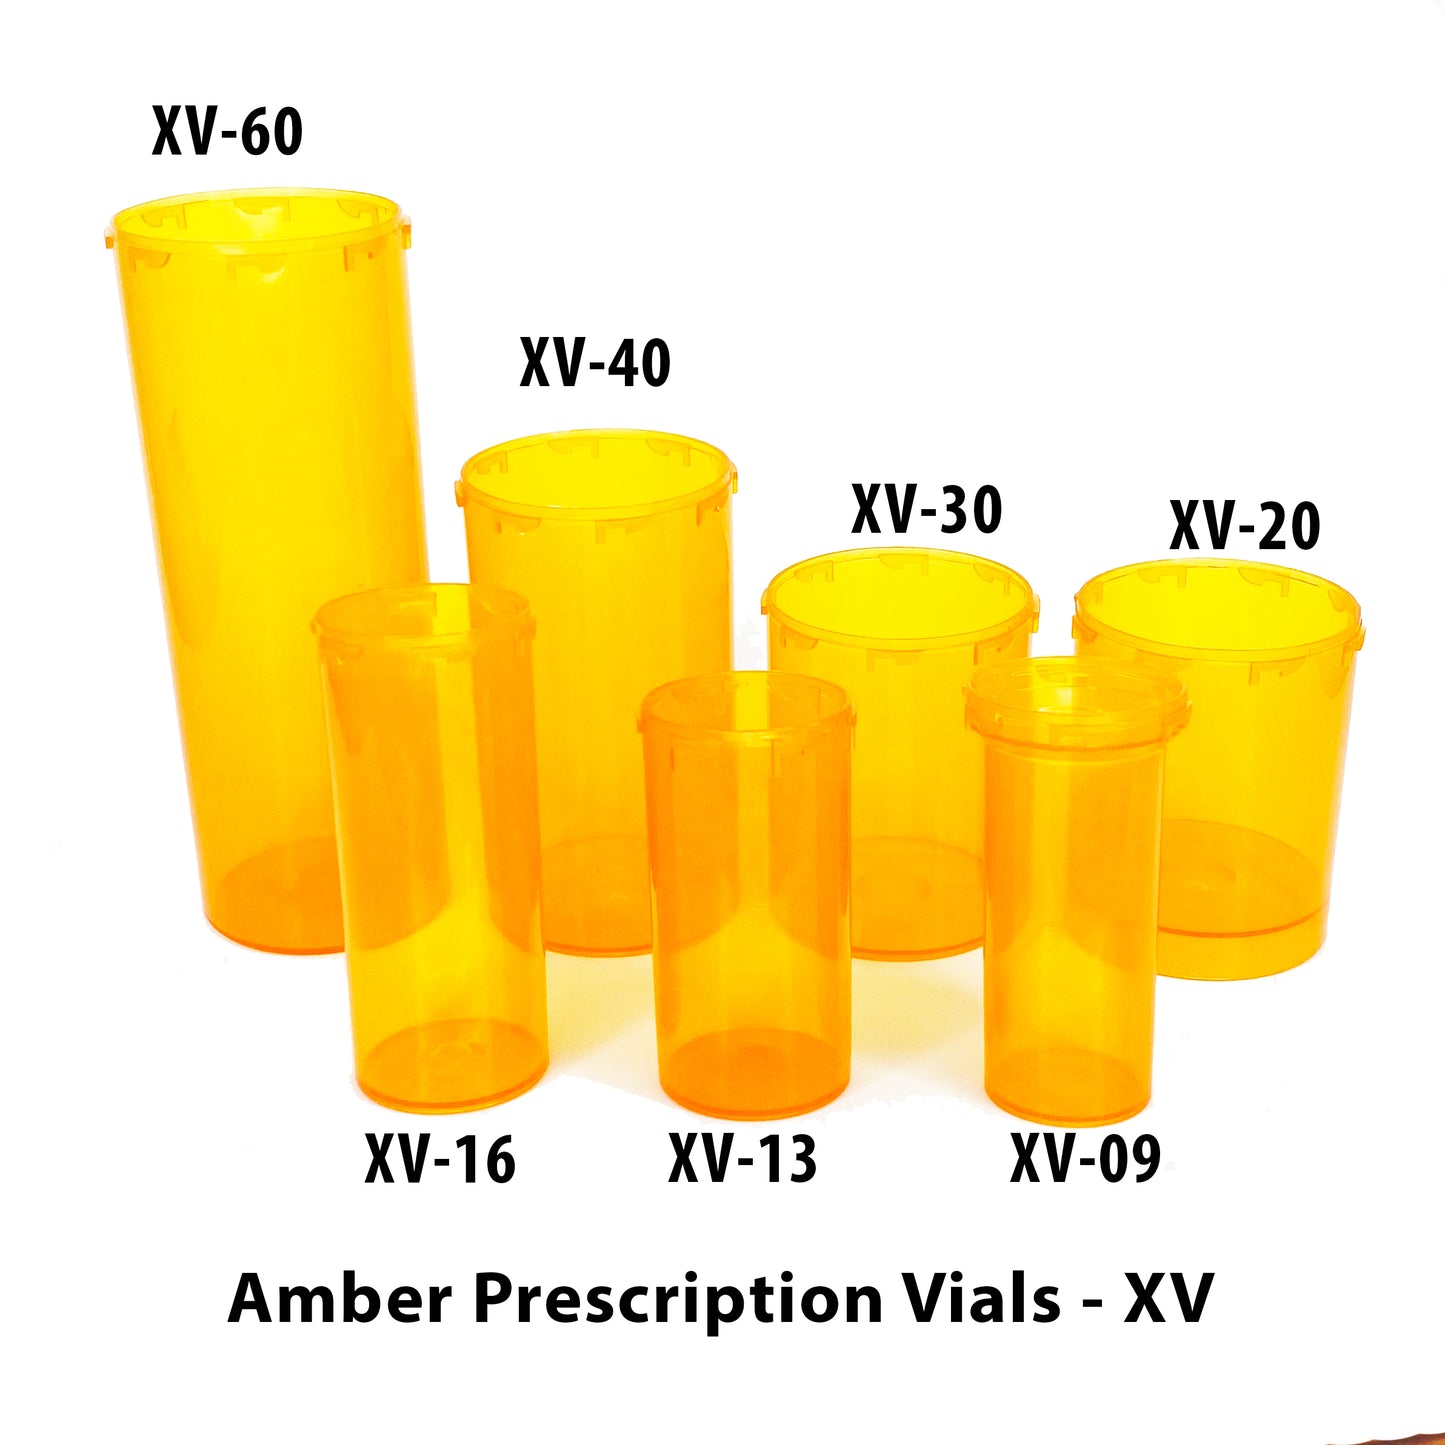 Amber Prescription Vials (XV)